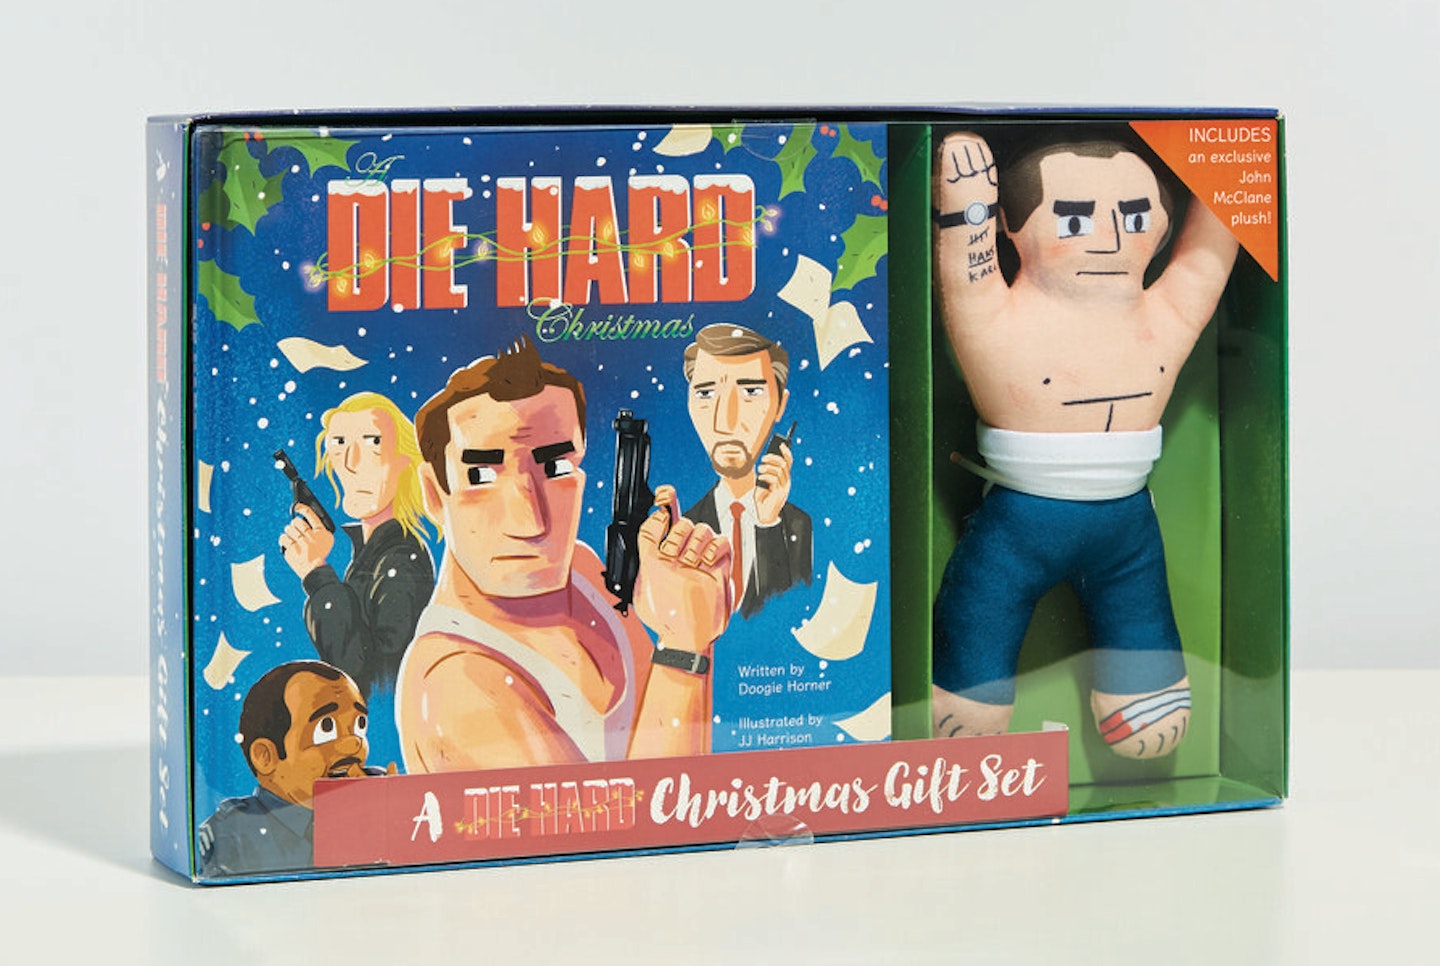 Die Hard Christmas Gift Set